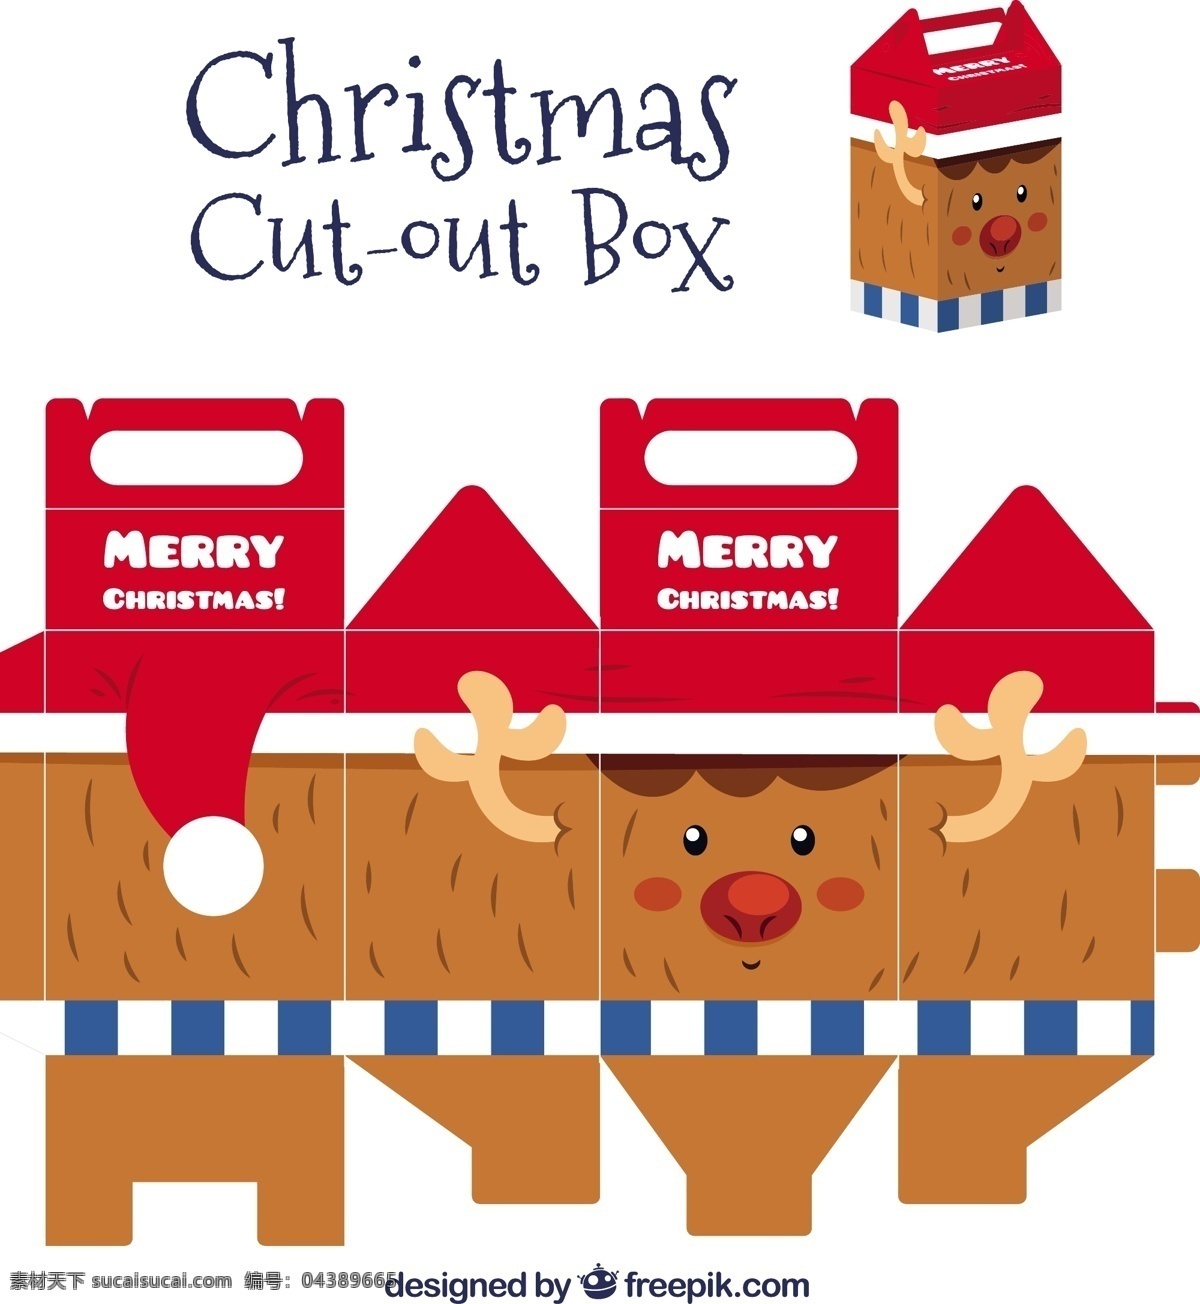 圣诞 驯鹿 剪 盒子 圣诞节 箱 模板 动物 圣诞快乐 冬天快乐 可爱 包装 庆典 节日 节日快乐 切 可爱的动物 季节 白色